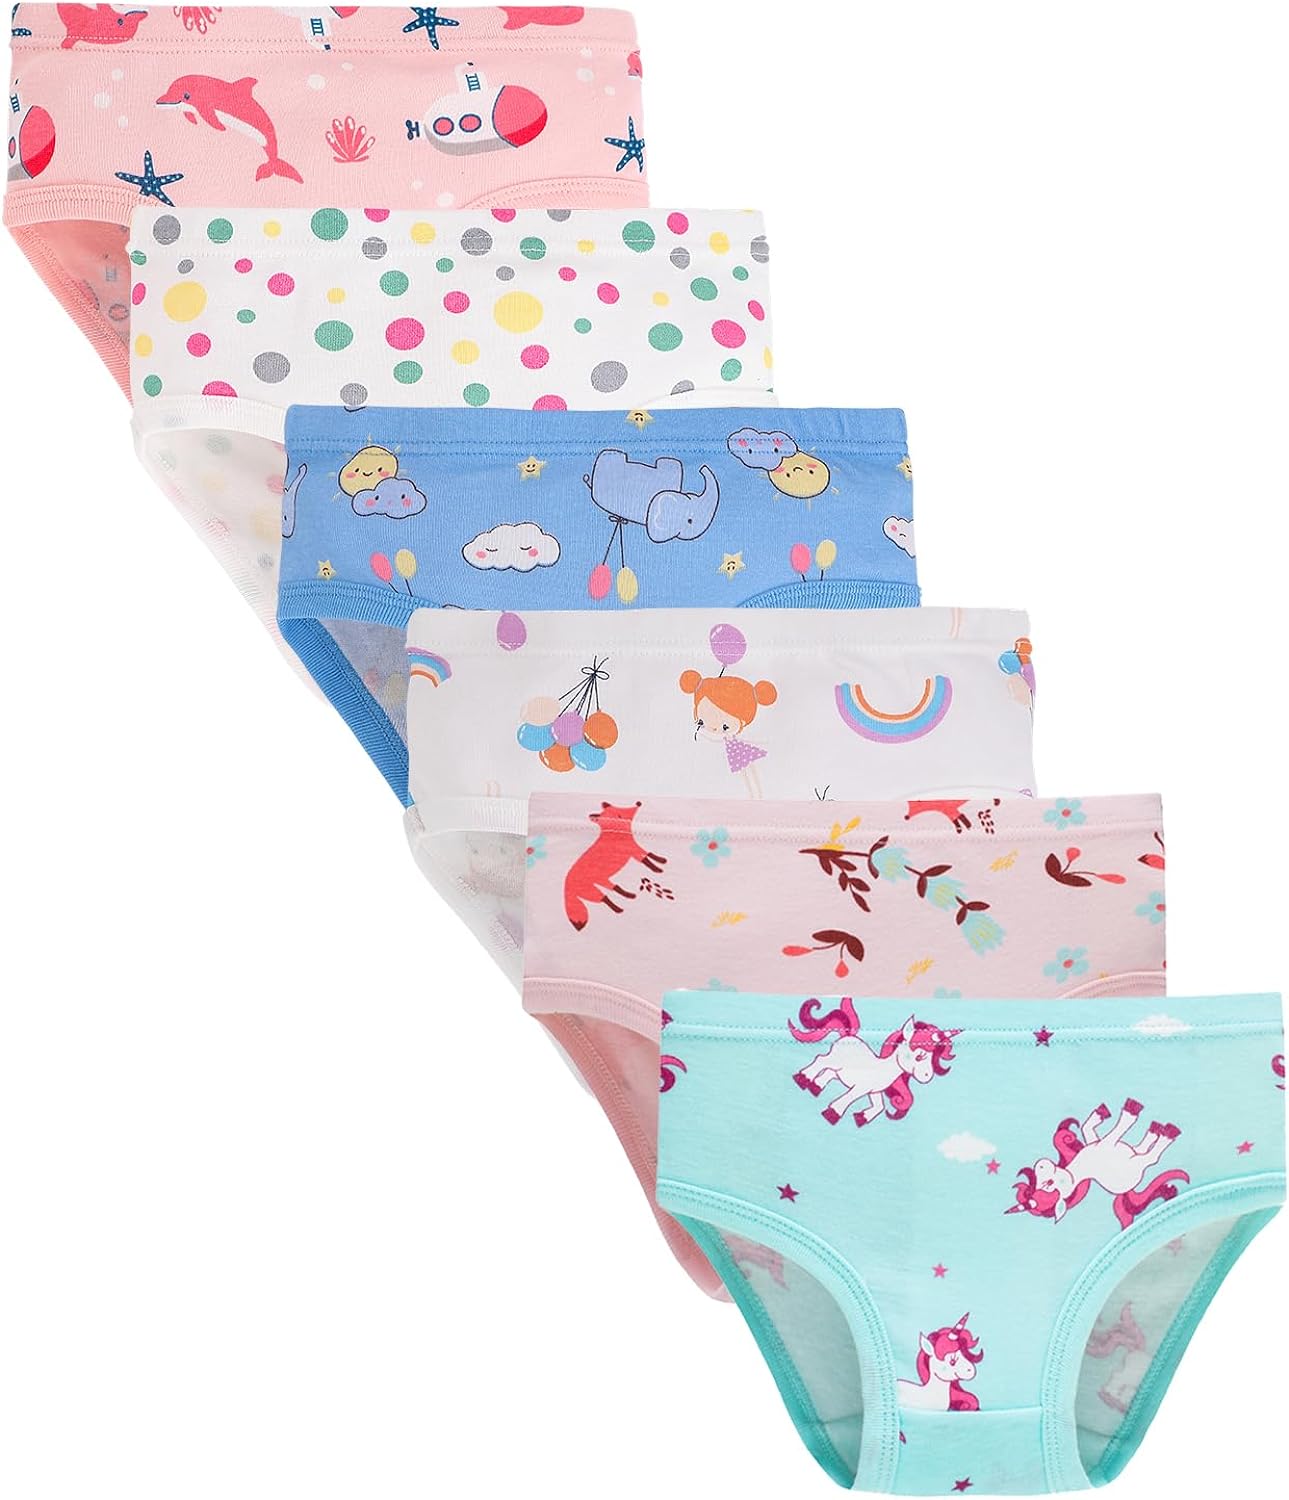 Buy Core Pretty Baby Underwear Toddler Little Girls Soft Cotton